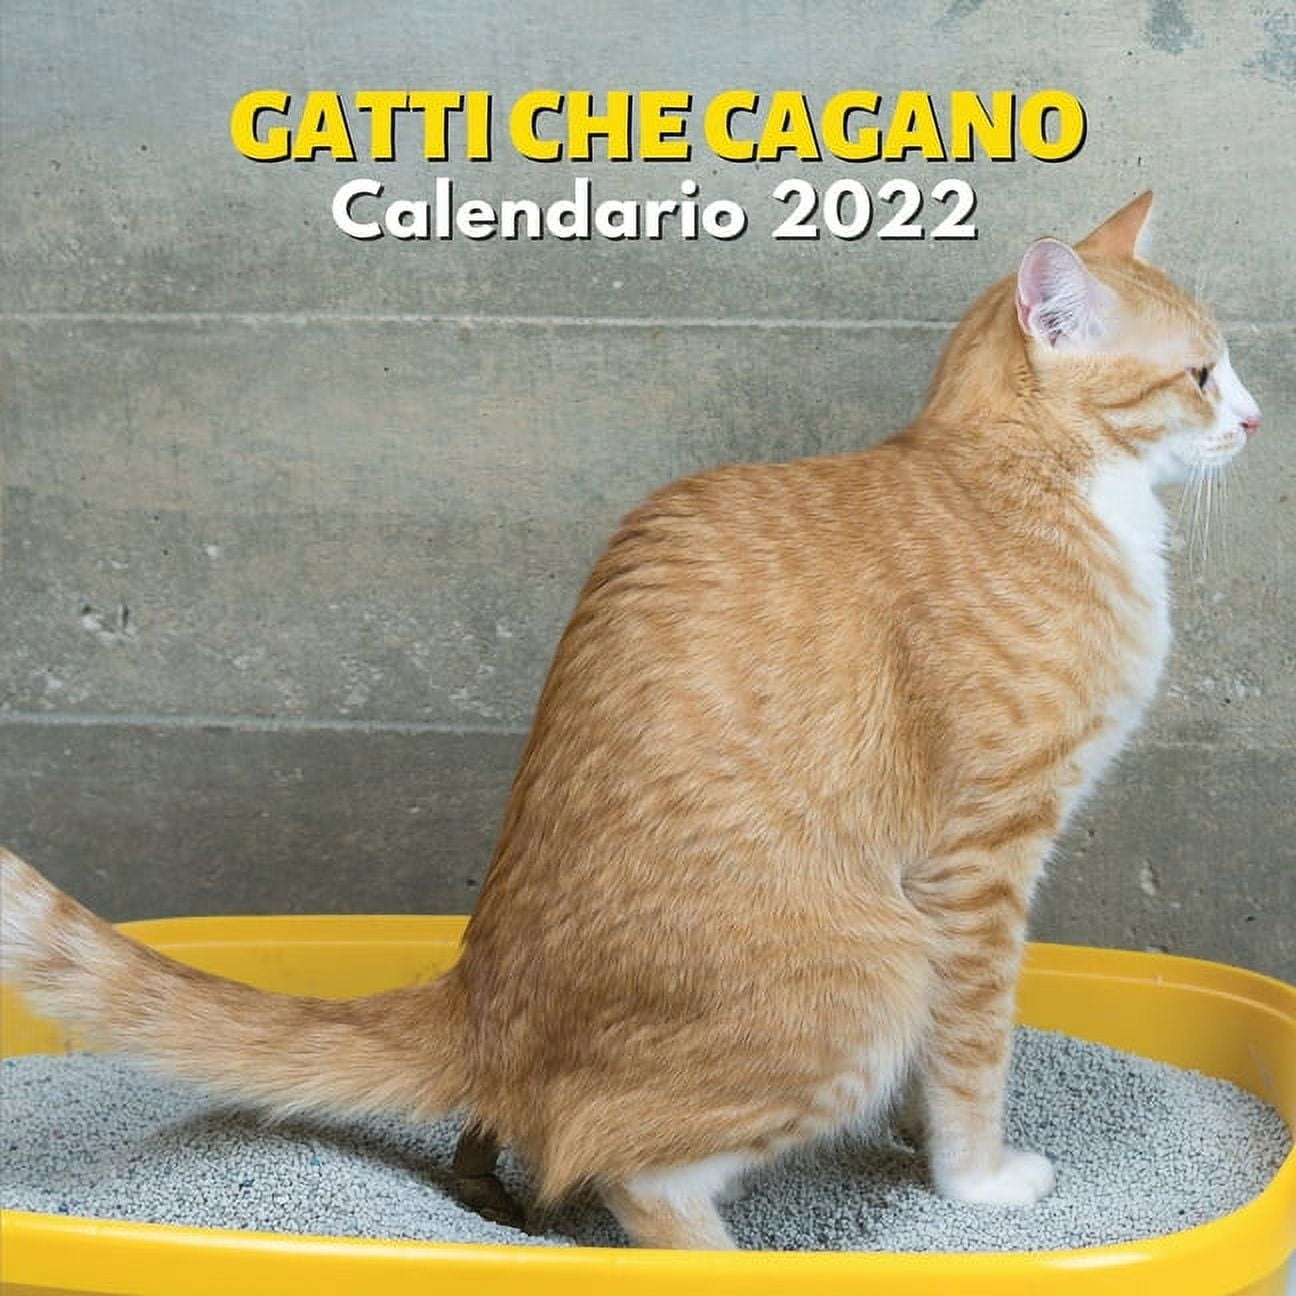 Gatti Che Cagano Calendario 2022 : amanti dei gatti - divertenti regali -  gatti che fanno la cacca - regalo scherzo uomo donna (Paperback) 